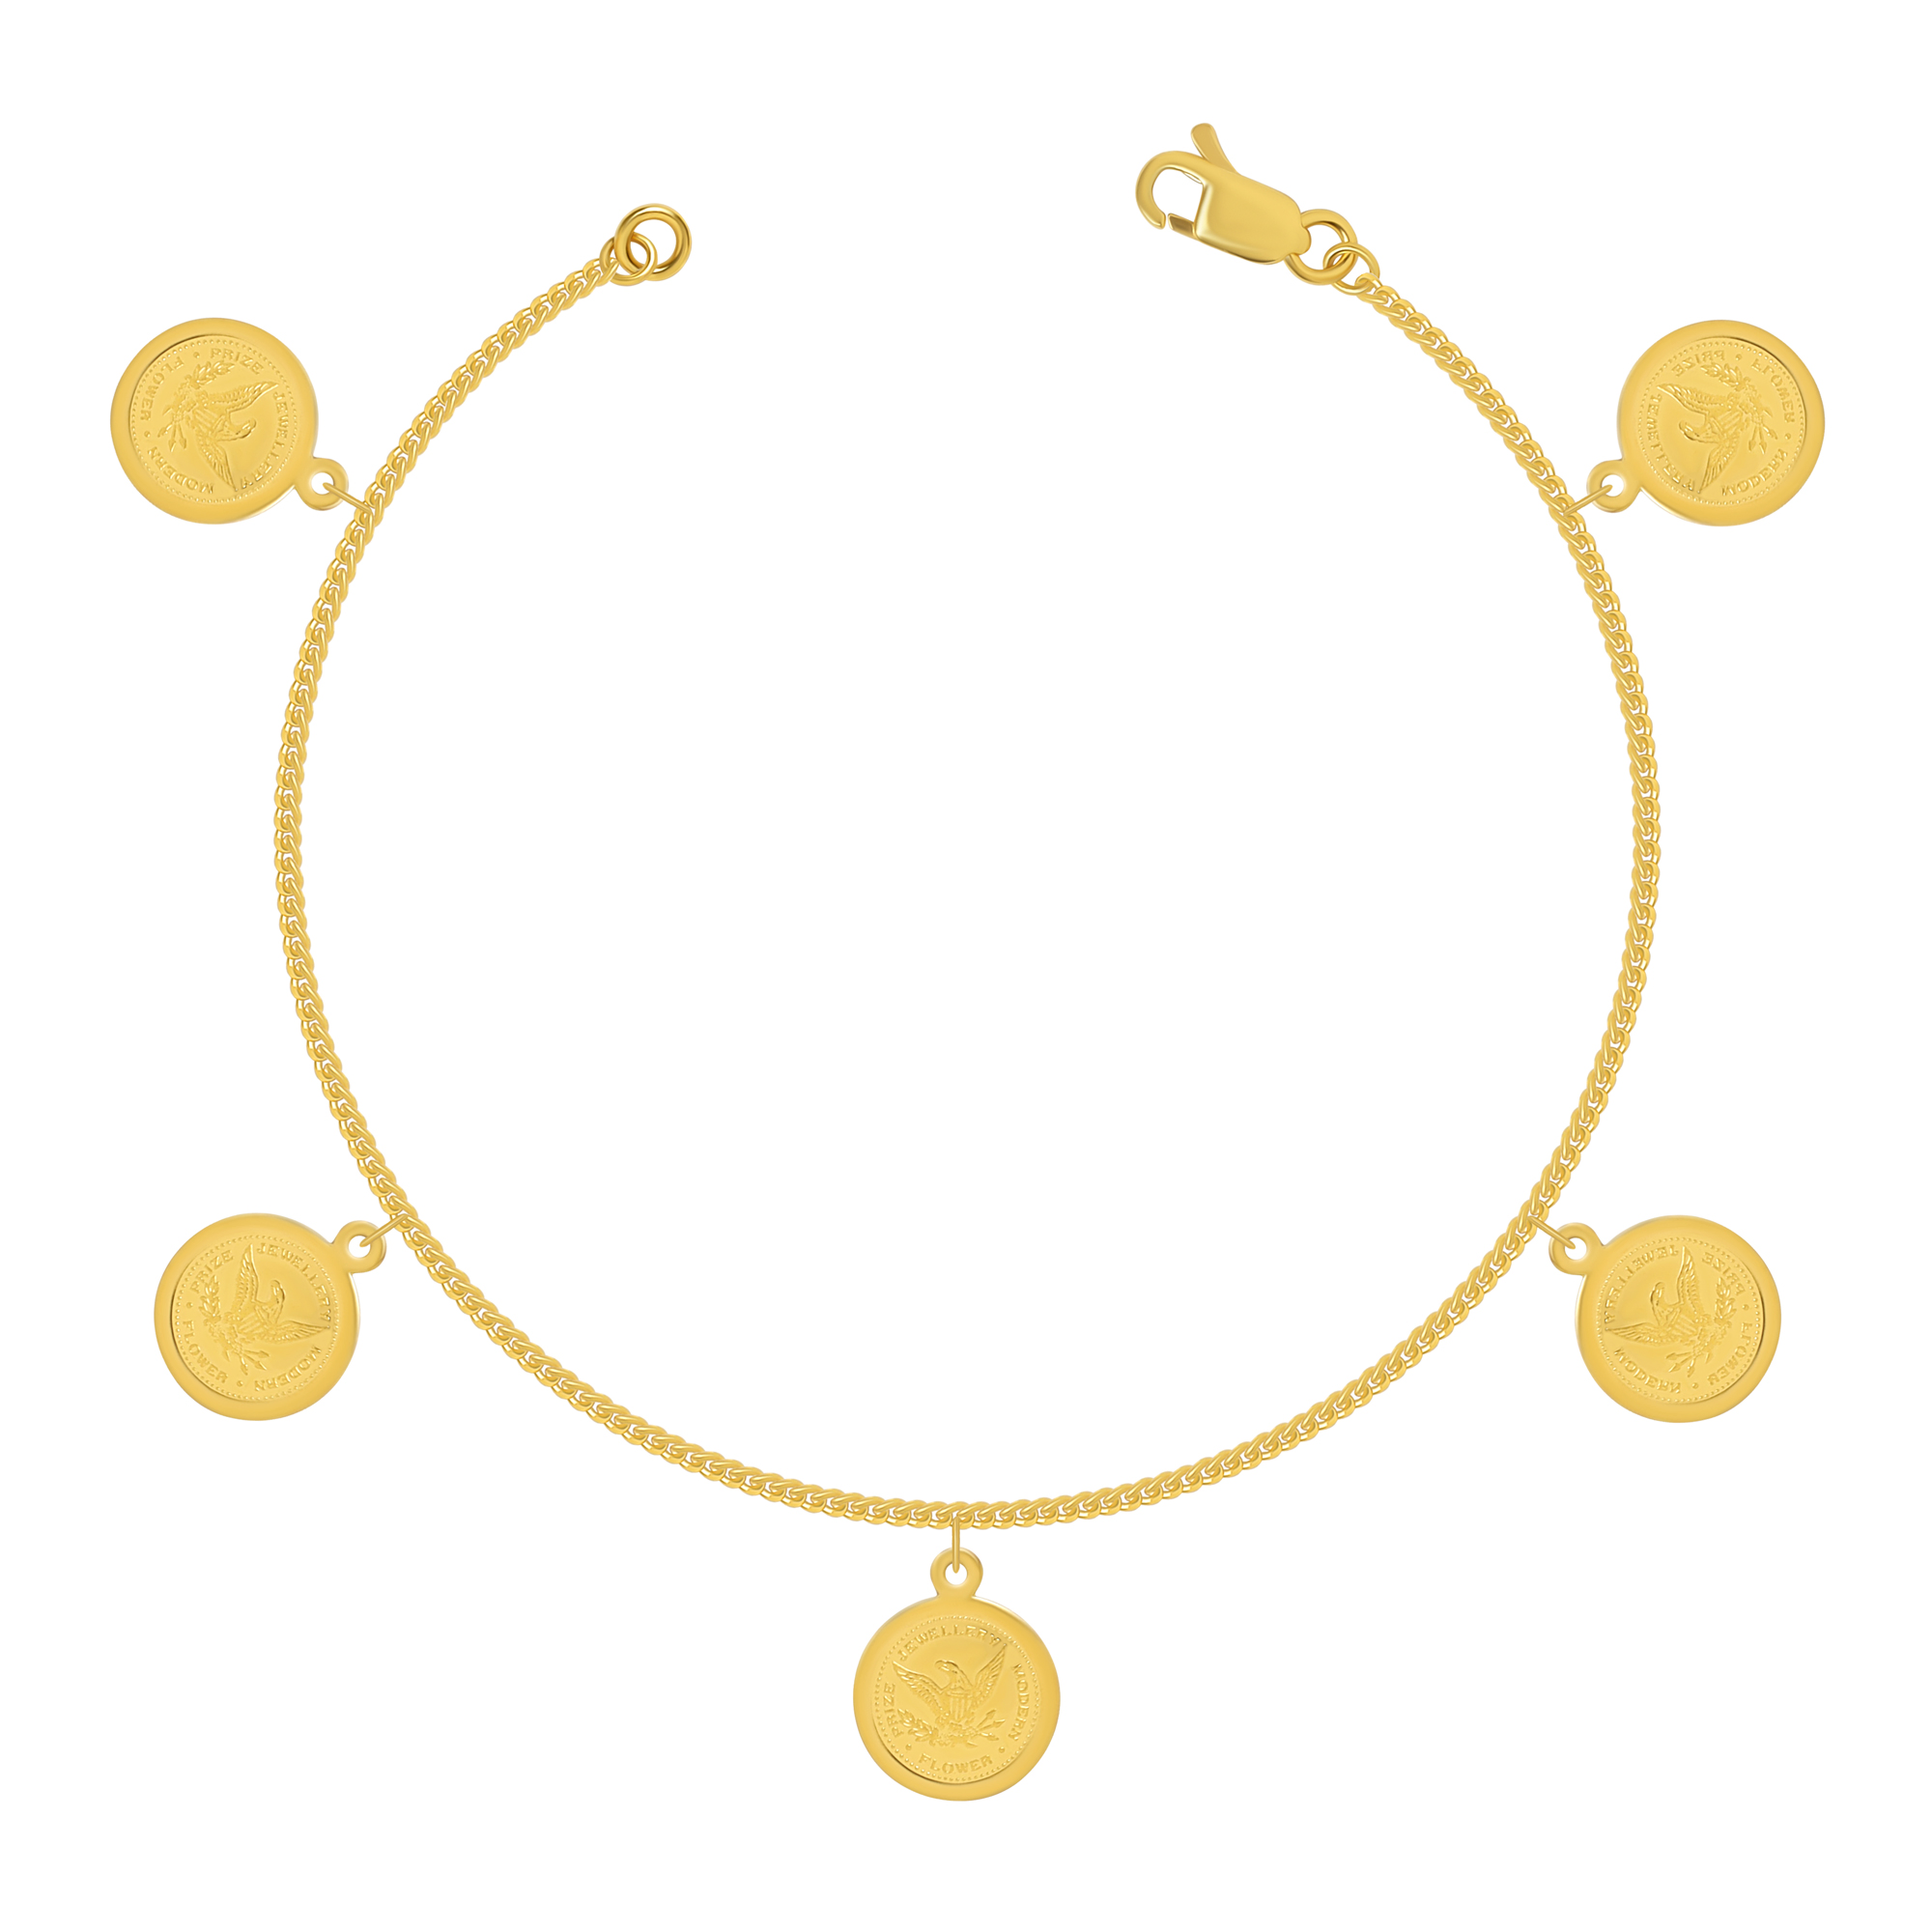 Buy Ladies Gold Bracelet Jewellery | Bracelets for Women